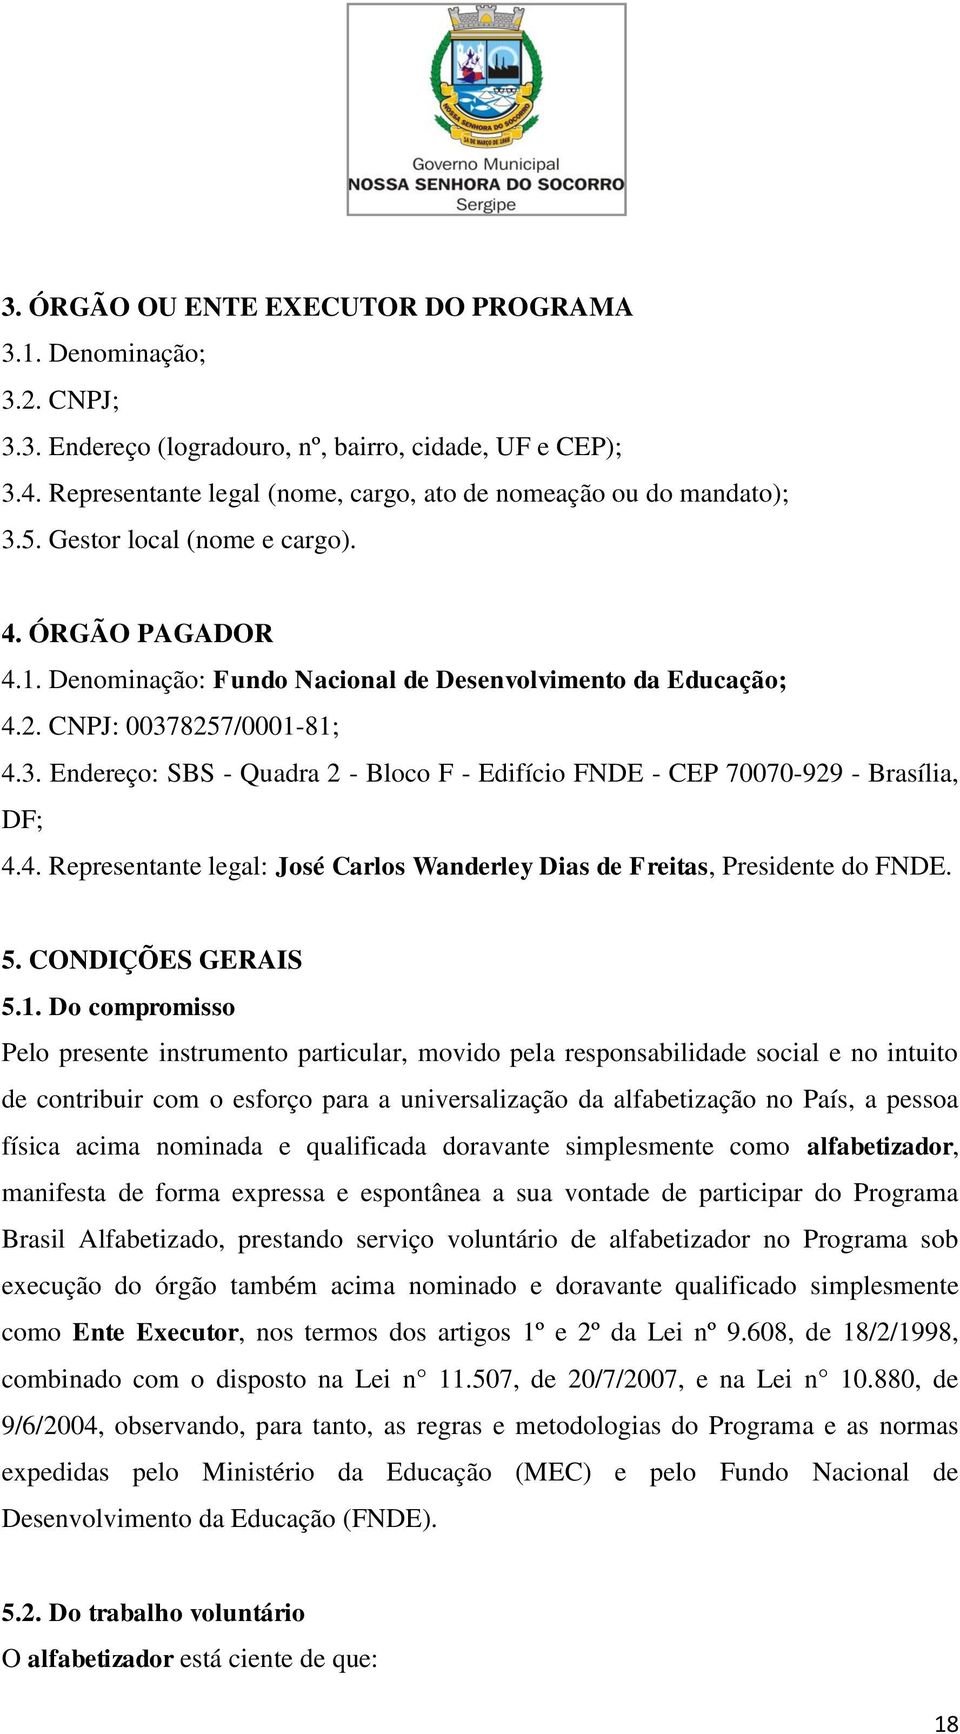 8257/0001-81; 4.3. Endereço: SBS - Quadra 2 - Bloco F - Edifício FNDE - CEP 70070-929 - Brasília, DF; 4.4. Representante legal: José Carlos Wanderley Dias de Freitas, Presidente do FNDE. 5.